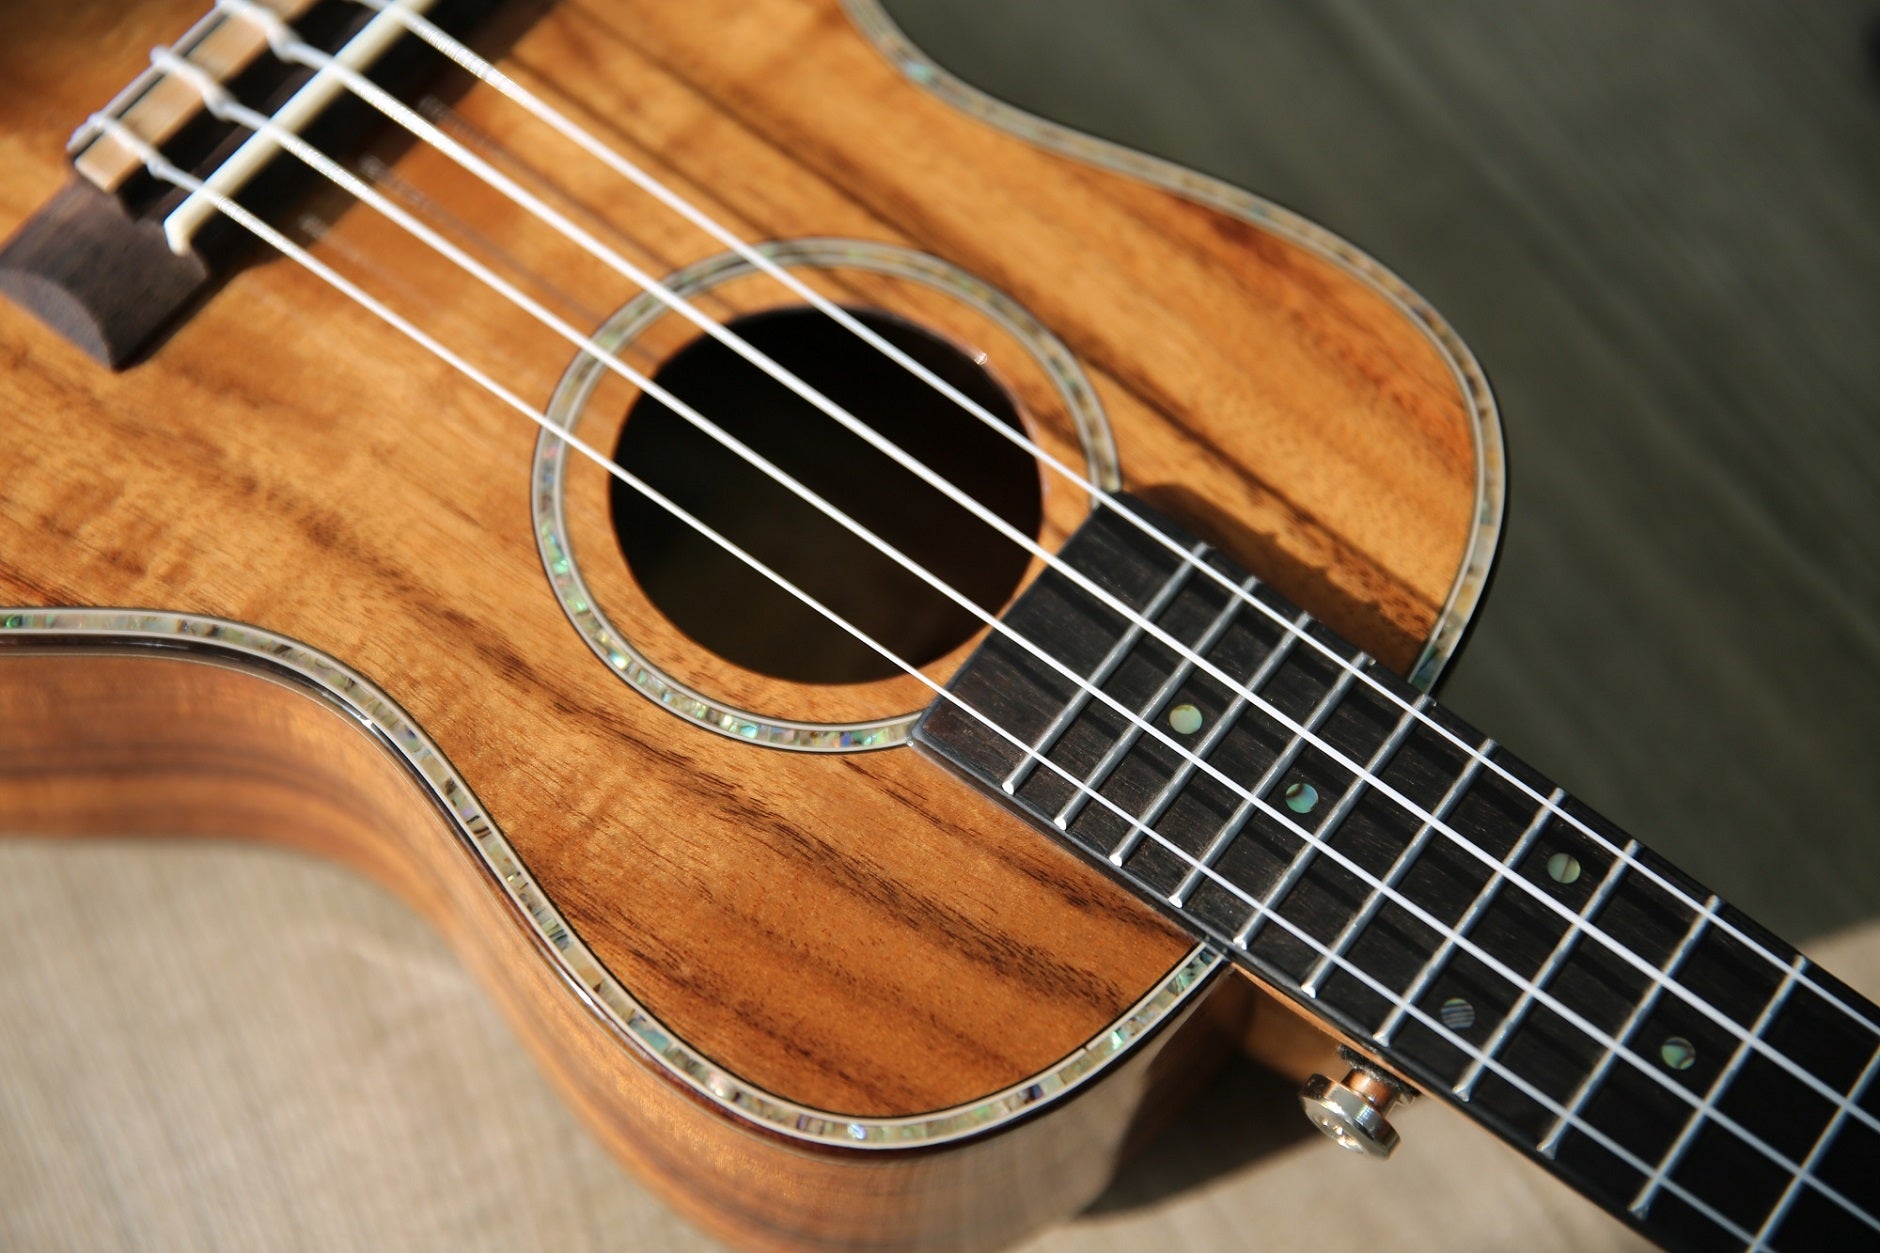 hricane acacia wood ukulele with glossy finished